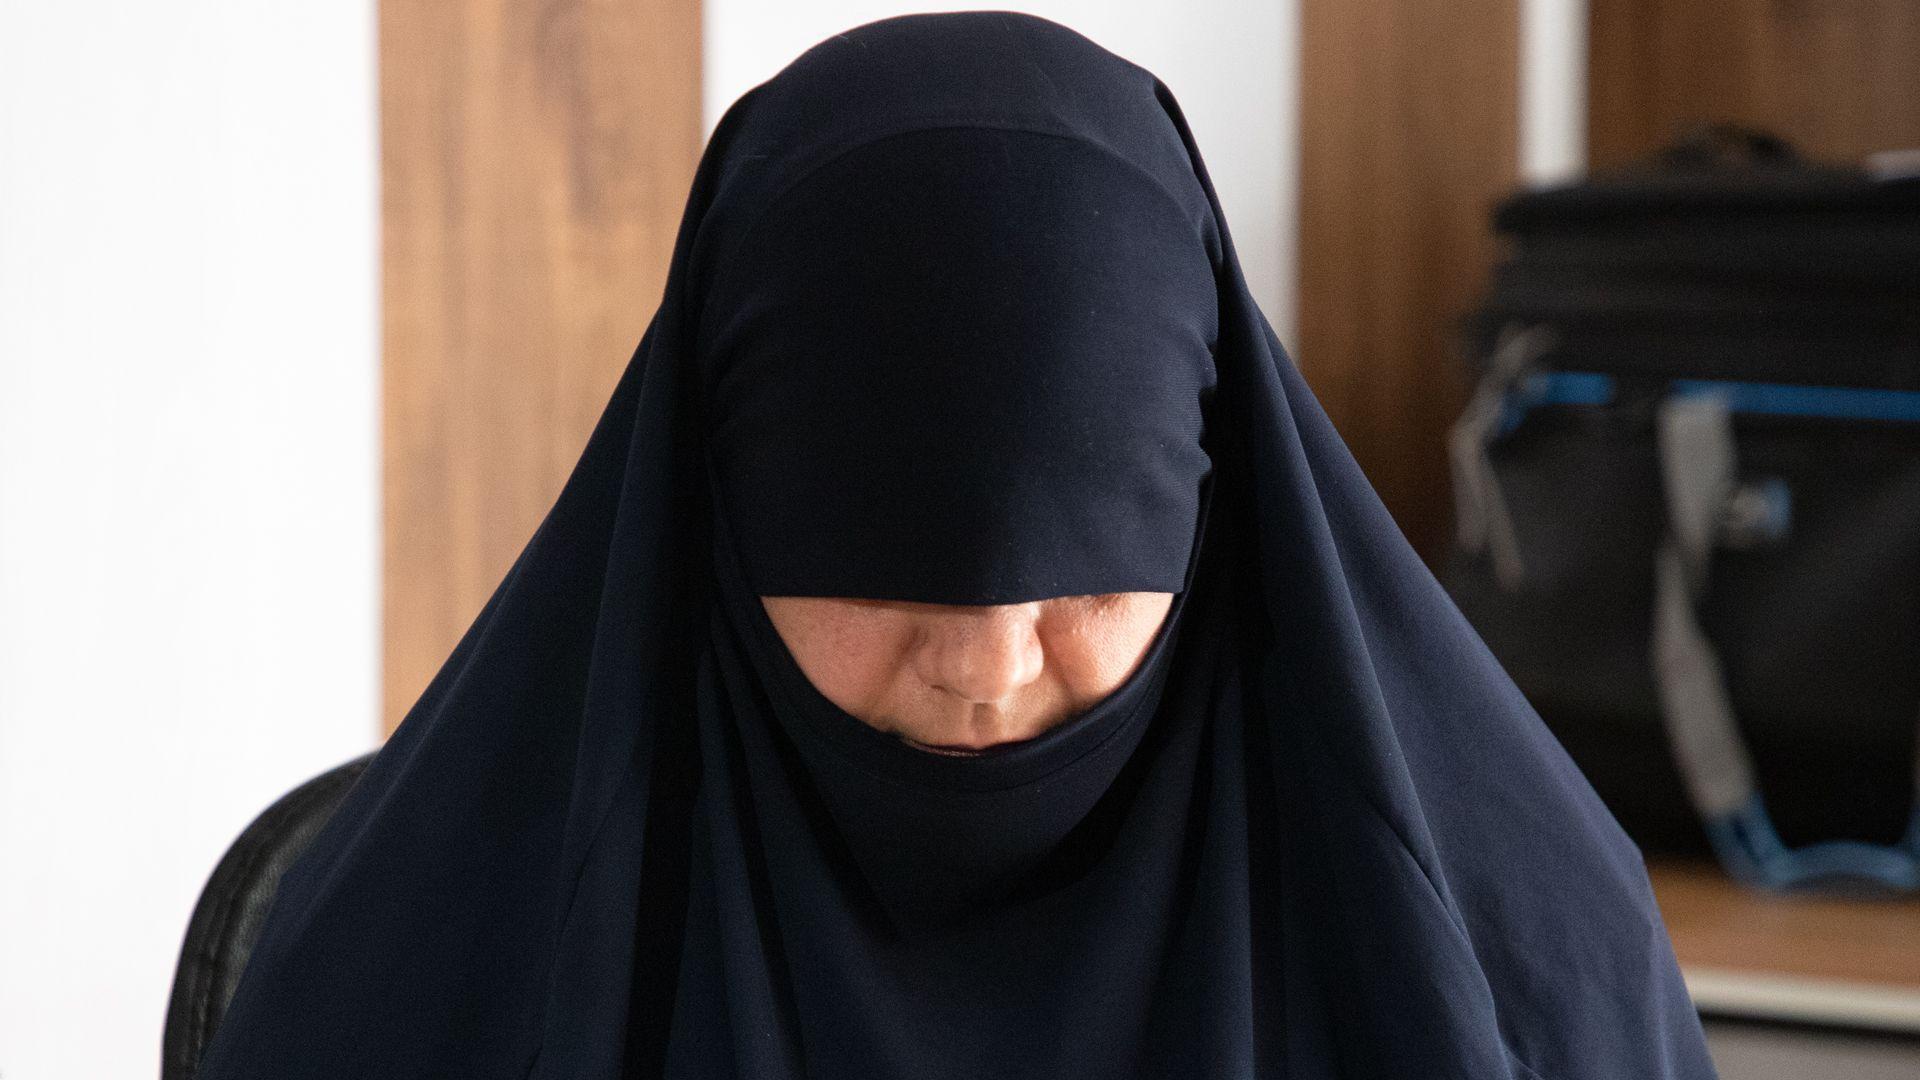 أم حذيفة، الزوجة الأولى لزعيم تنظيم الدولة الإسلامية الراحل أبو بكر البغدادي، مسجونة الآن في العراق